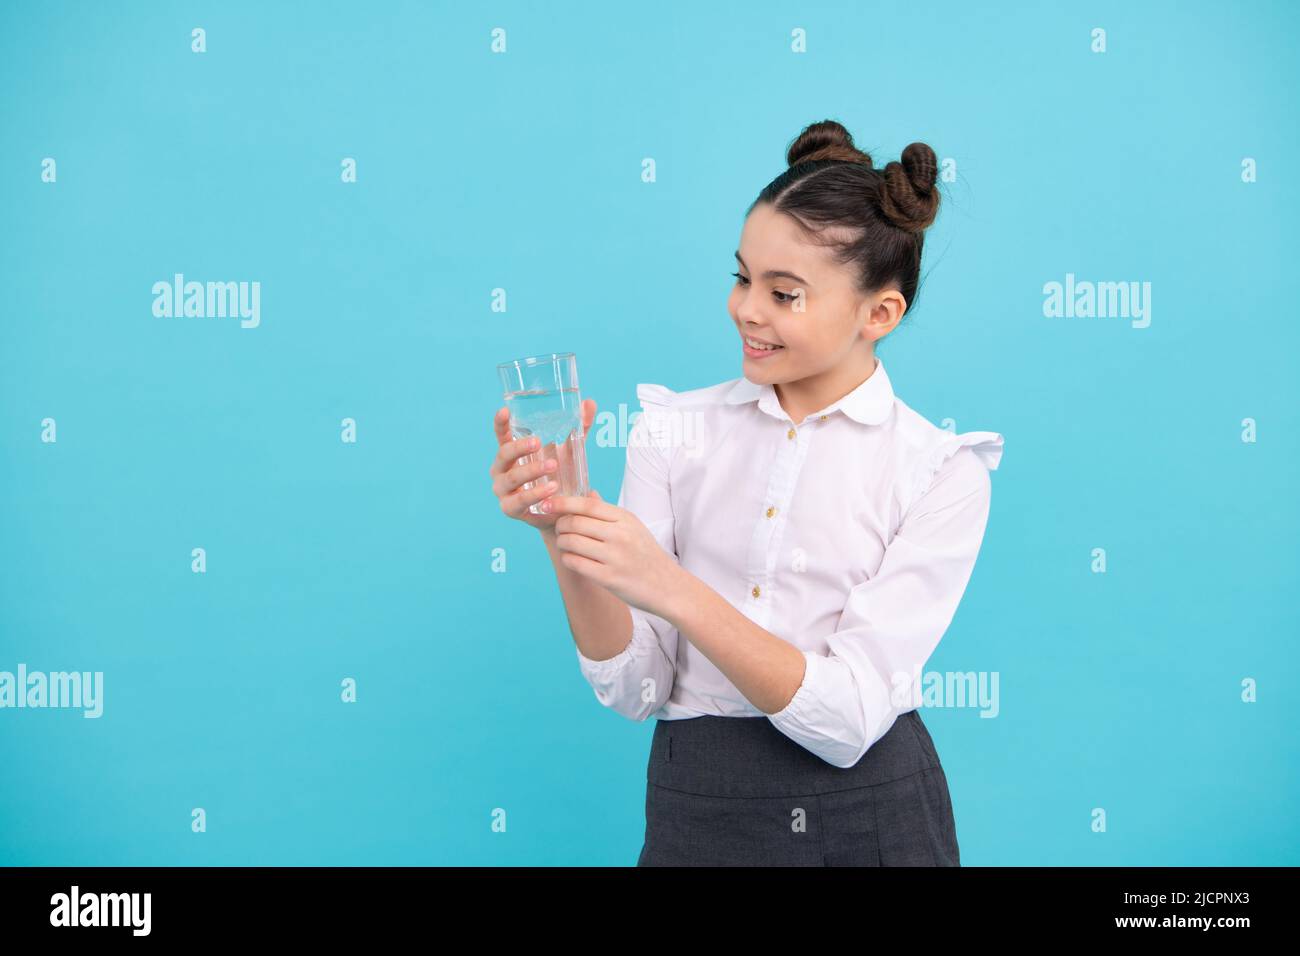 Une jeune fille adorable boit de l'eau en verre sur fond bleu. Bonne adolescente, émotions positives et souriantes de la jeune fille. Banque D'Images